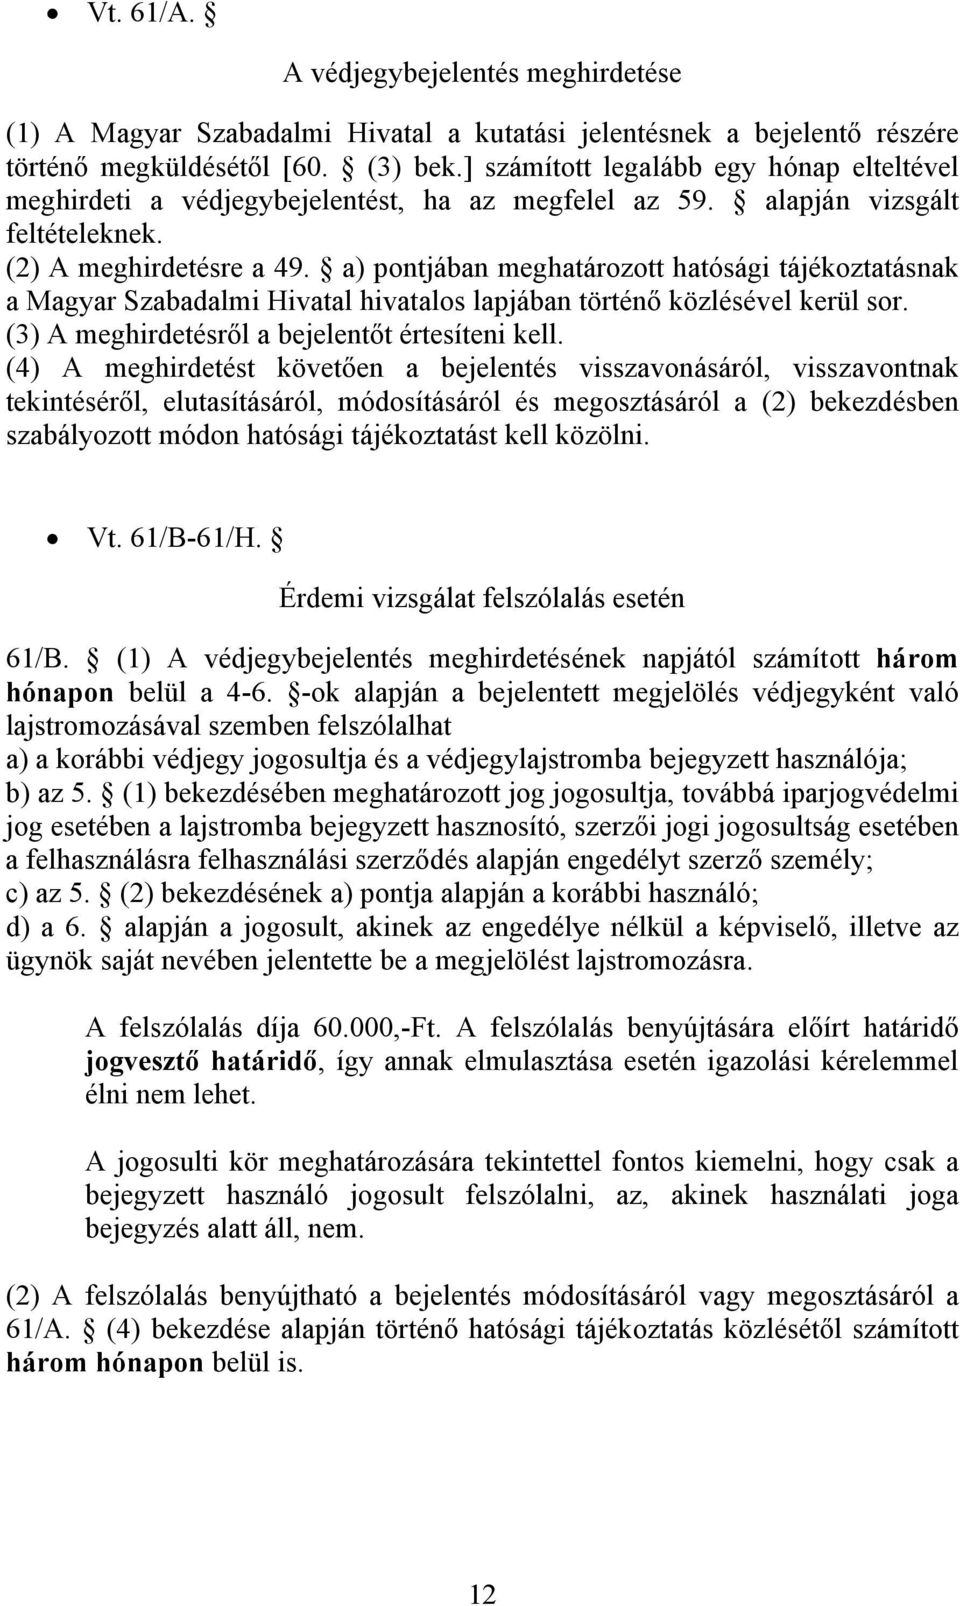 a) pontjában meghatározott hatósági tájékoztatásnak a Magyar Szabadalmi Hivatal hivatalos lapjában történő közlésével kerül sor. (3) A meghirdetésről a bejelentőt értesíteni kell.